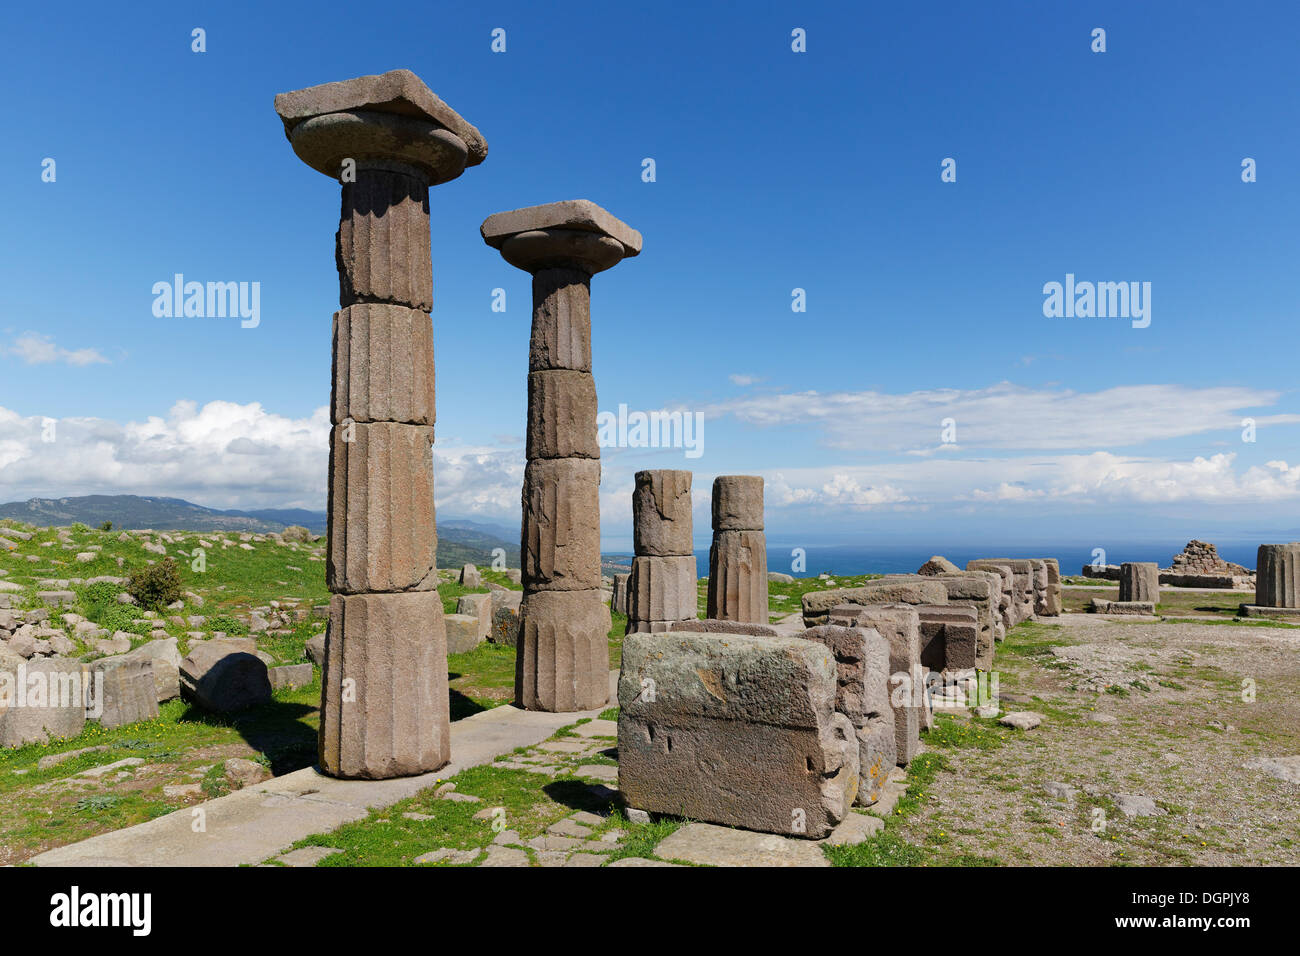 Colonne doriche del tempio di Athena, Assos, Çanakkale provincia, regione di Marmara, Turchia Foto Stock